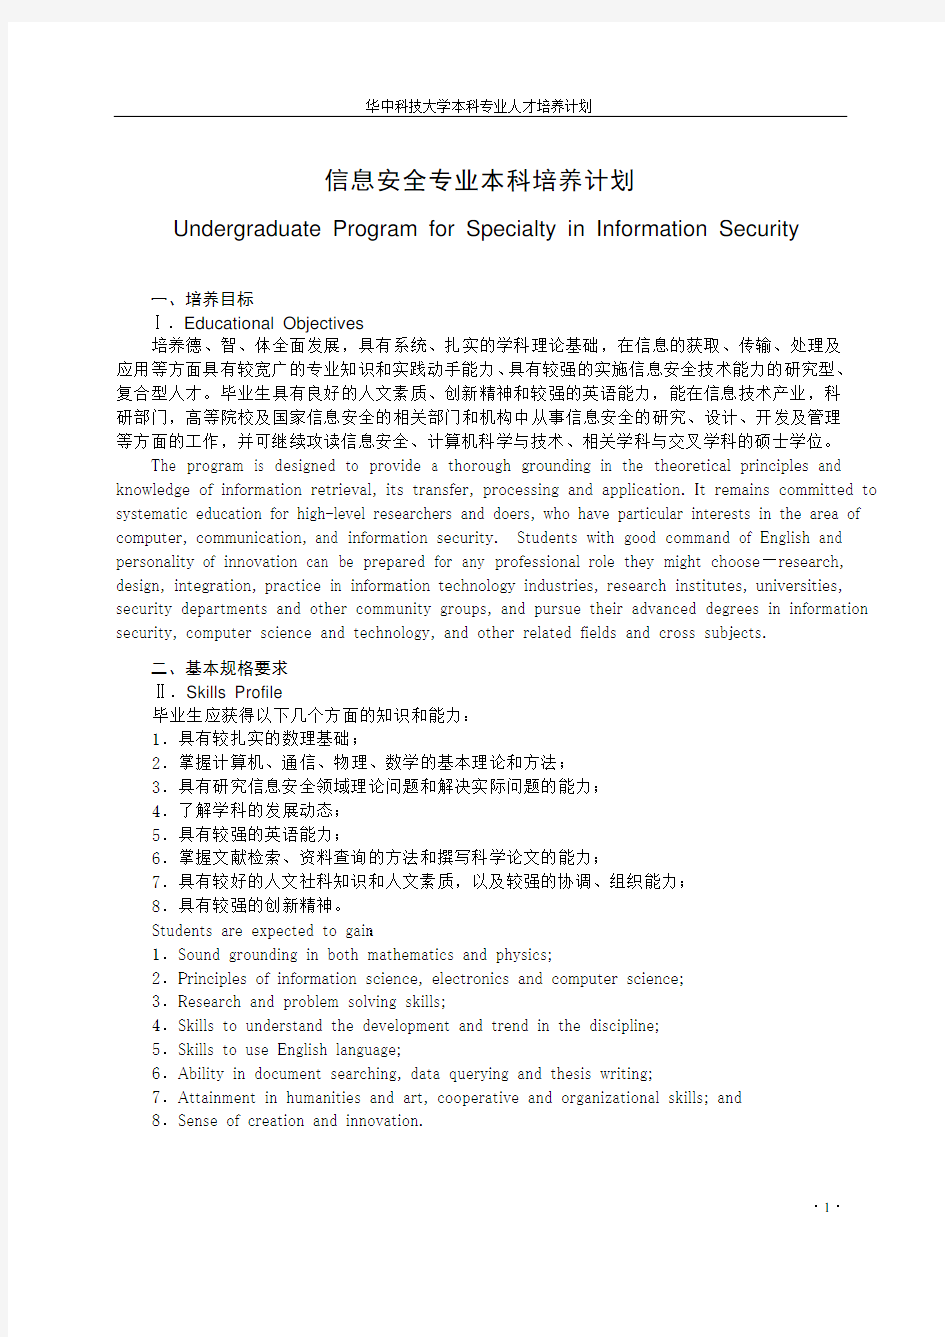 华中科技大学信息安全专业本科人才培养方案